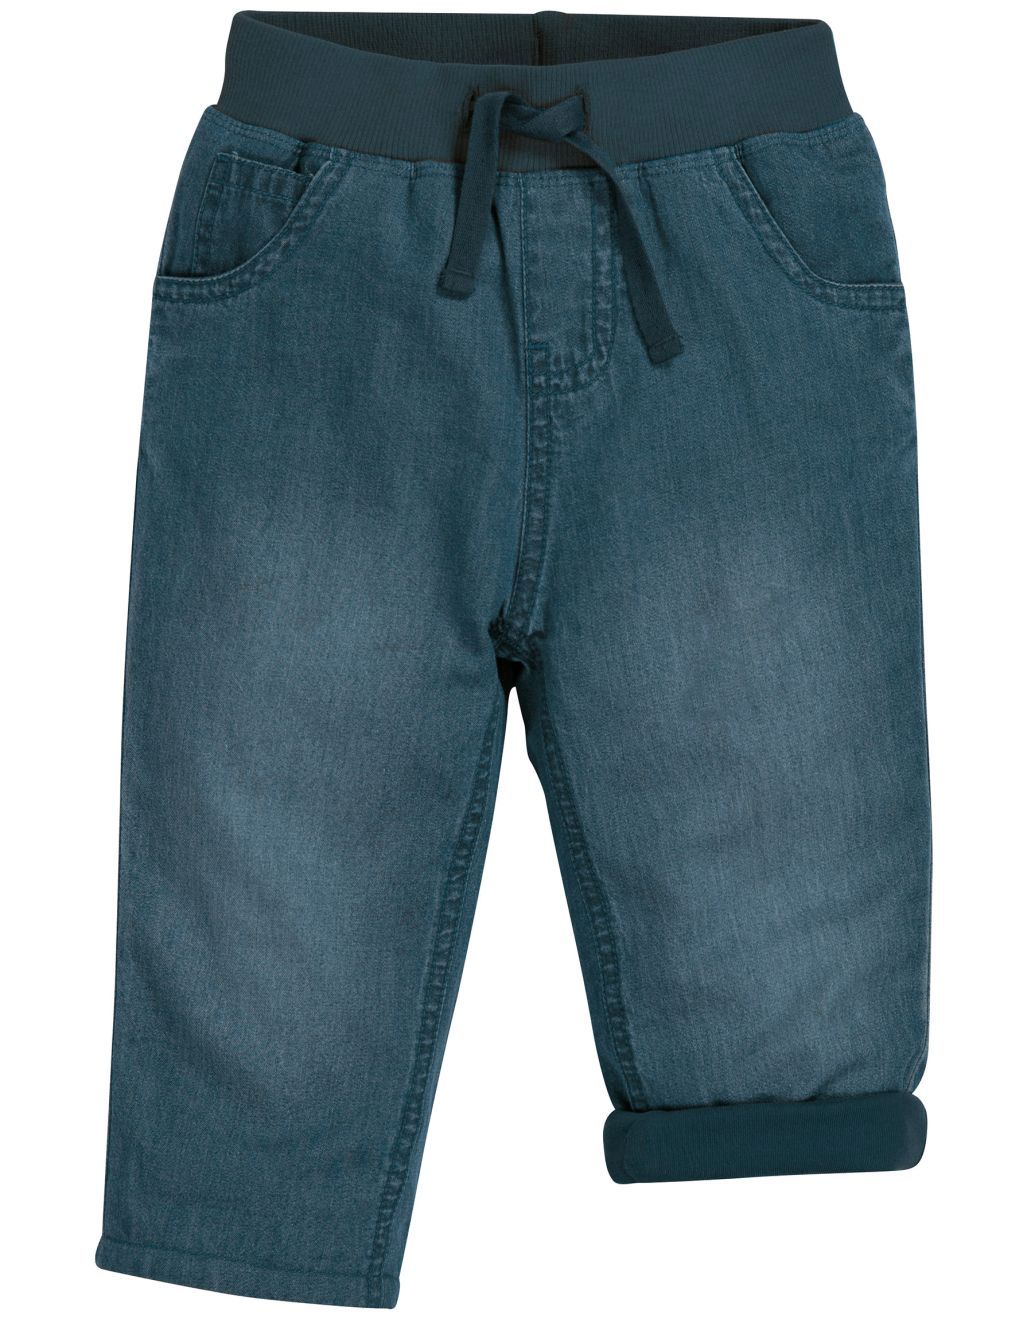 Comfy Lined Jeans Light Wash Denim 80/86